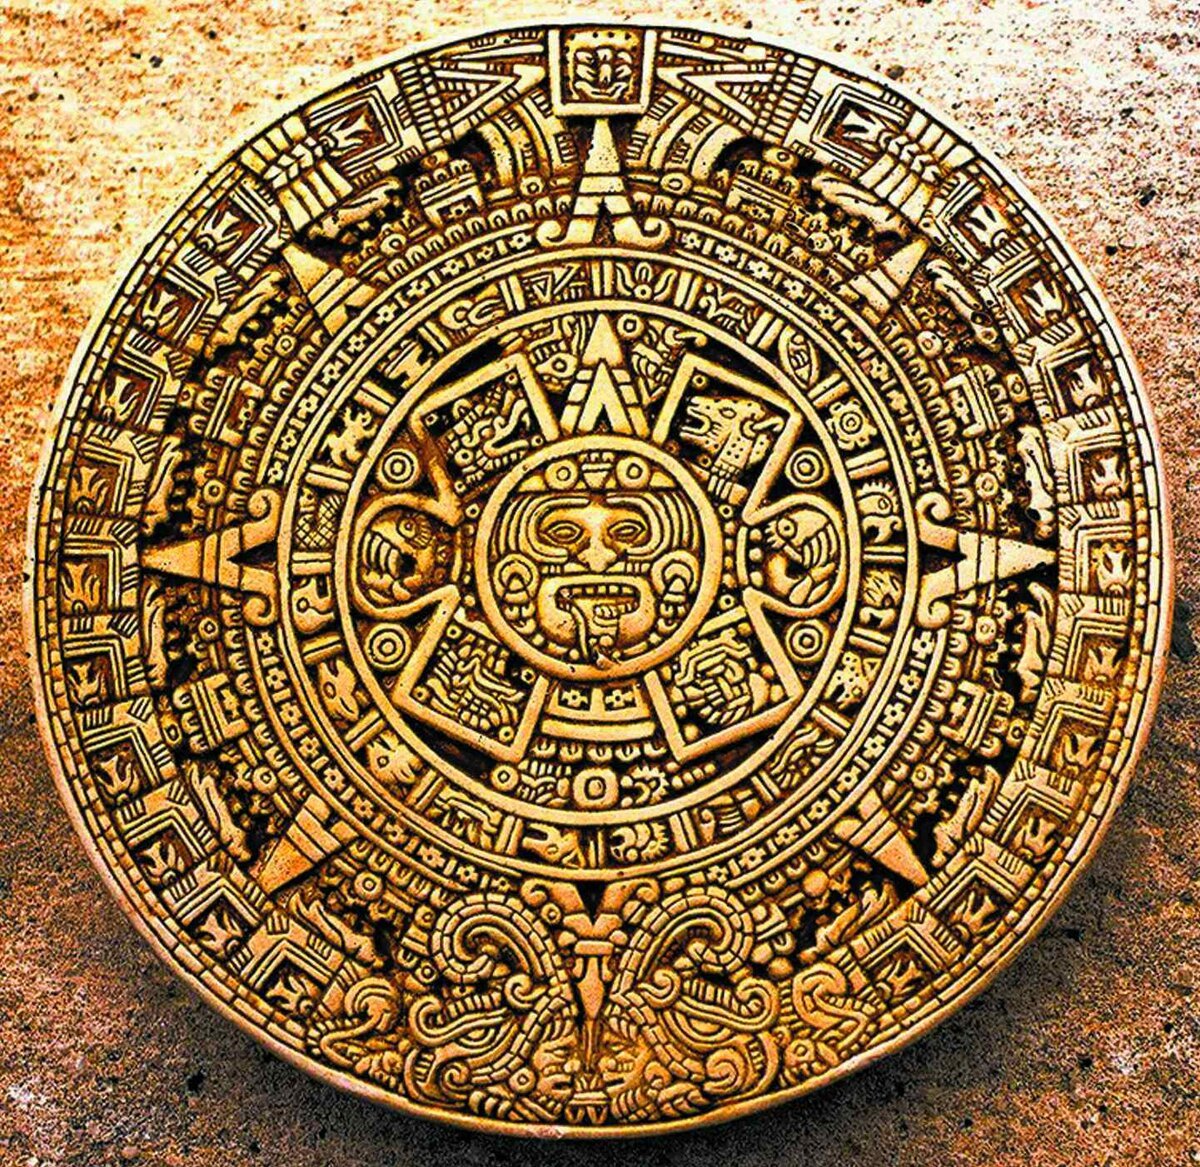 Календарь ма й я слушать. Солнечный камень древних ацтеков. Камень солнца ацтеков. Солнечный календарь Майя. Солнечный календарь мая.